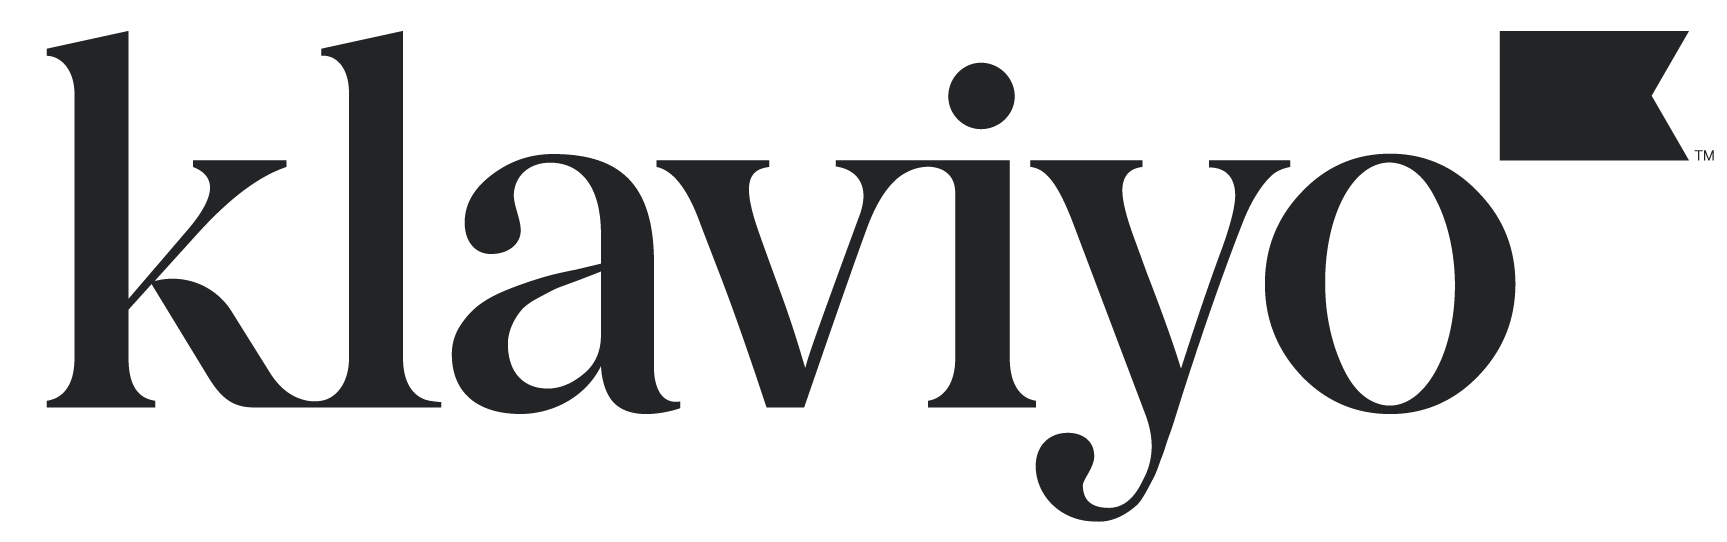 klaviyo-primary-logo-charcoal-extralarge